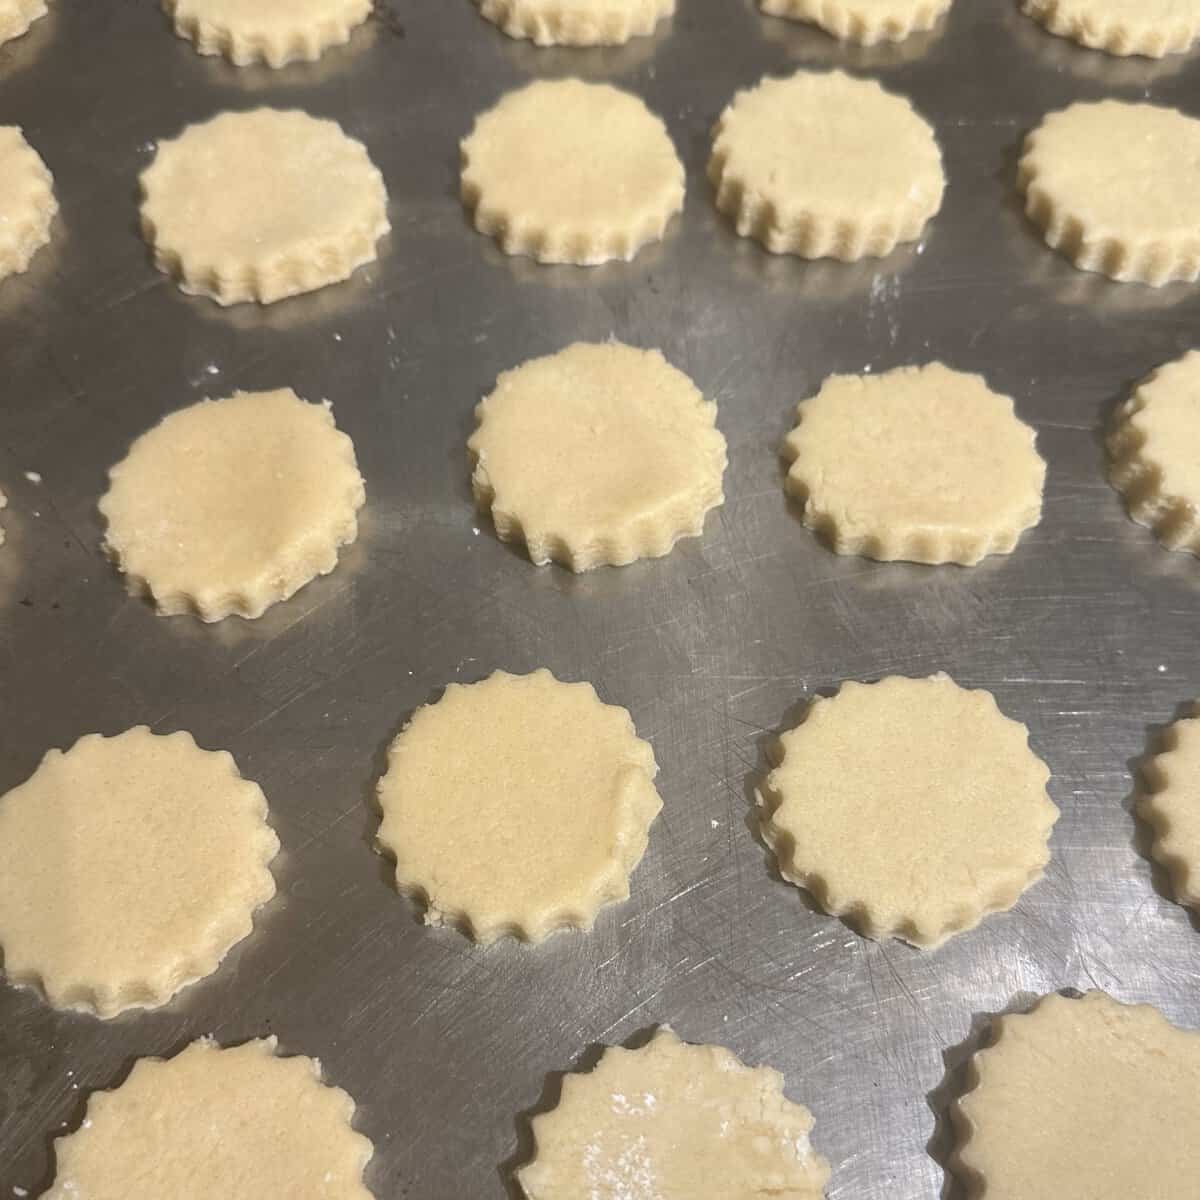 Vegan sable cookies on baking sheet before baking.